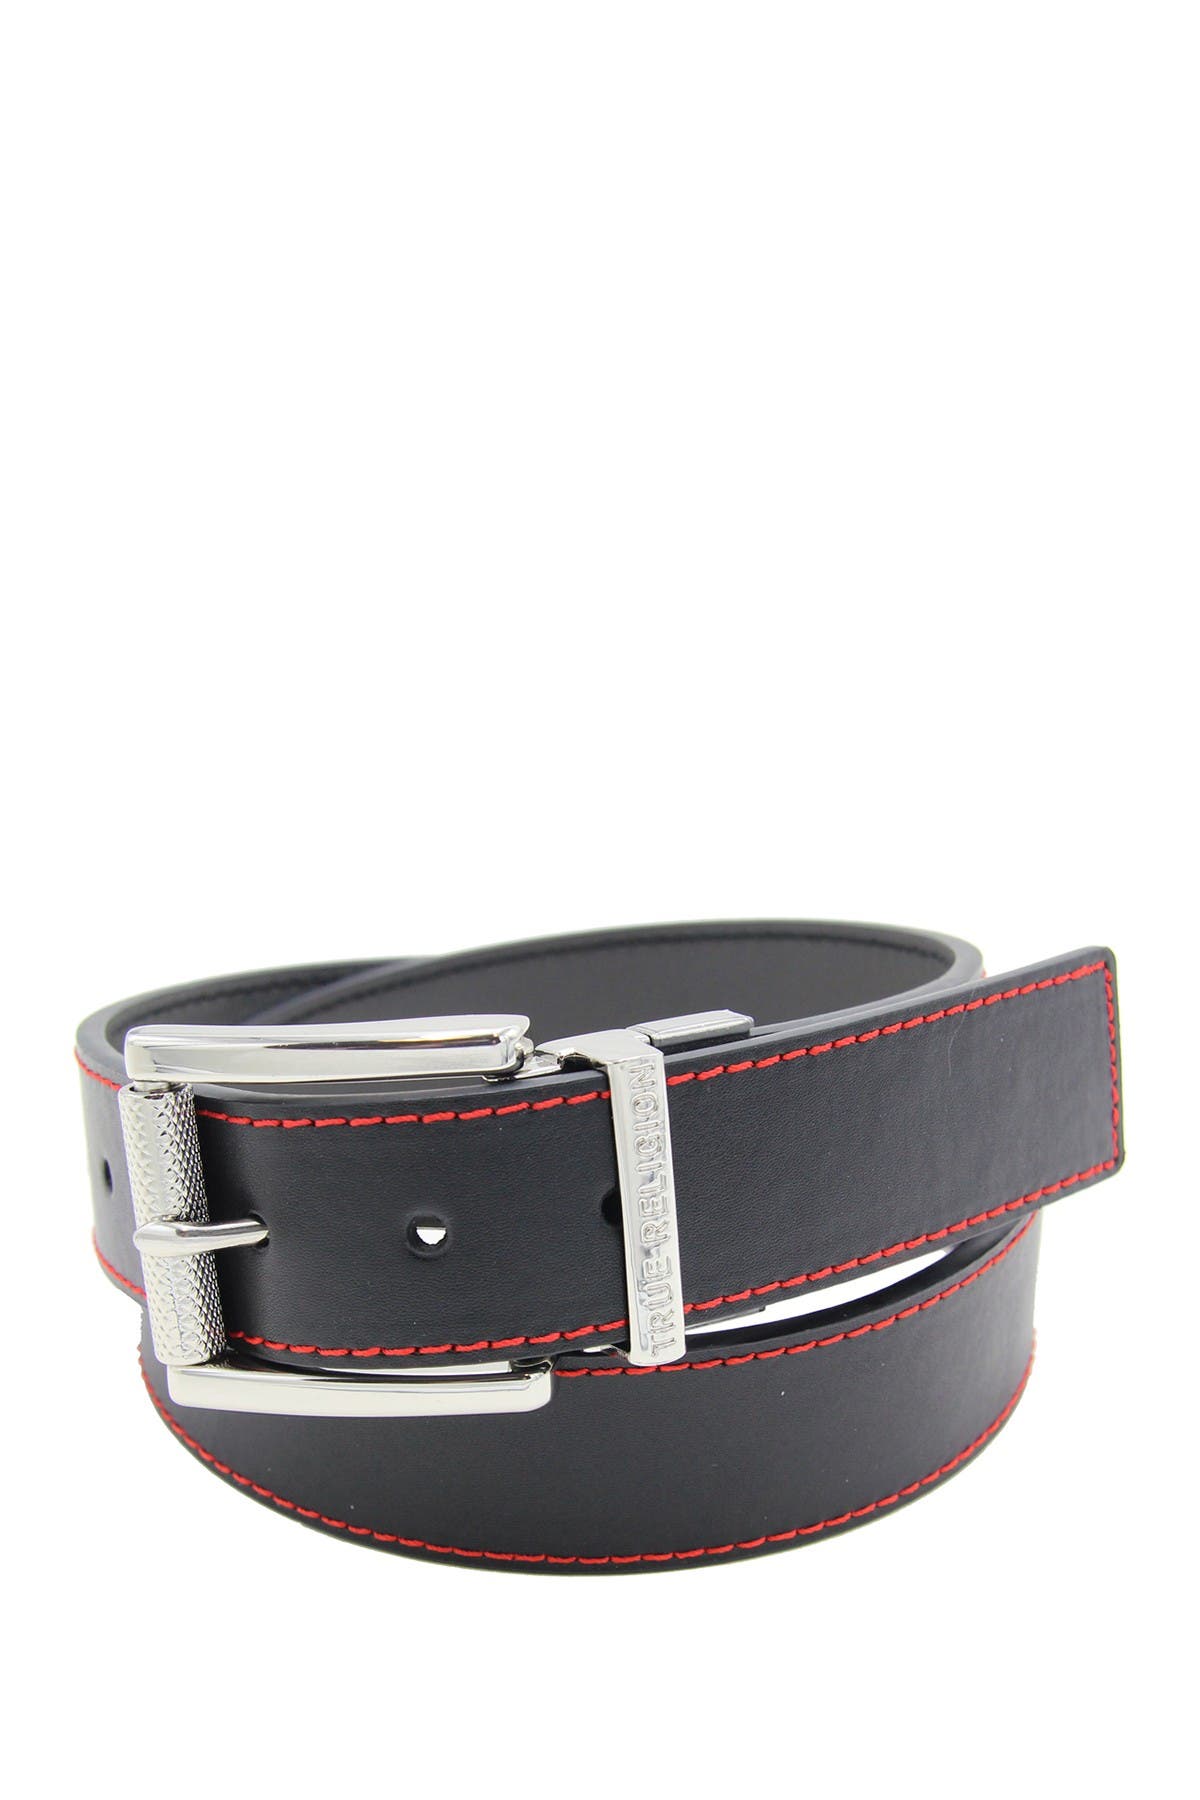 True Religion Lumin Reversible Belt In Black/grey | ModeSens